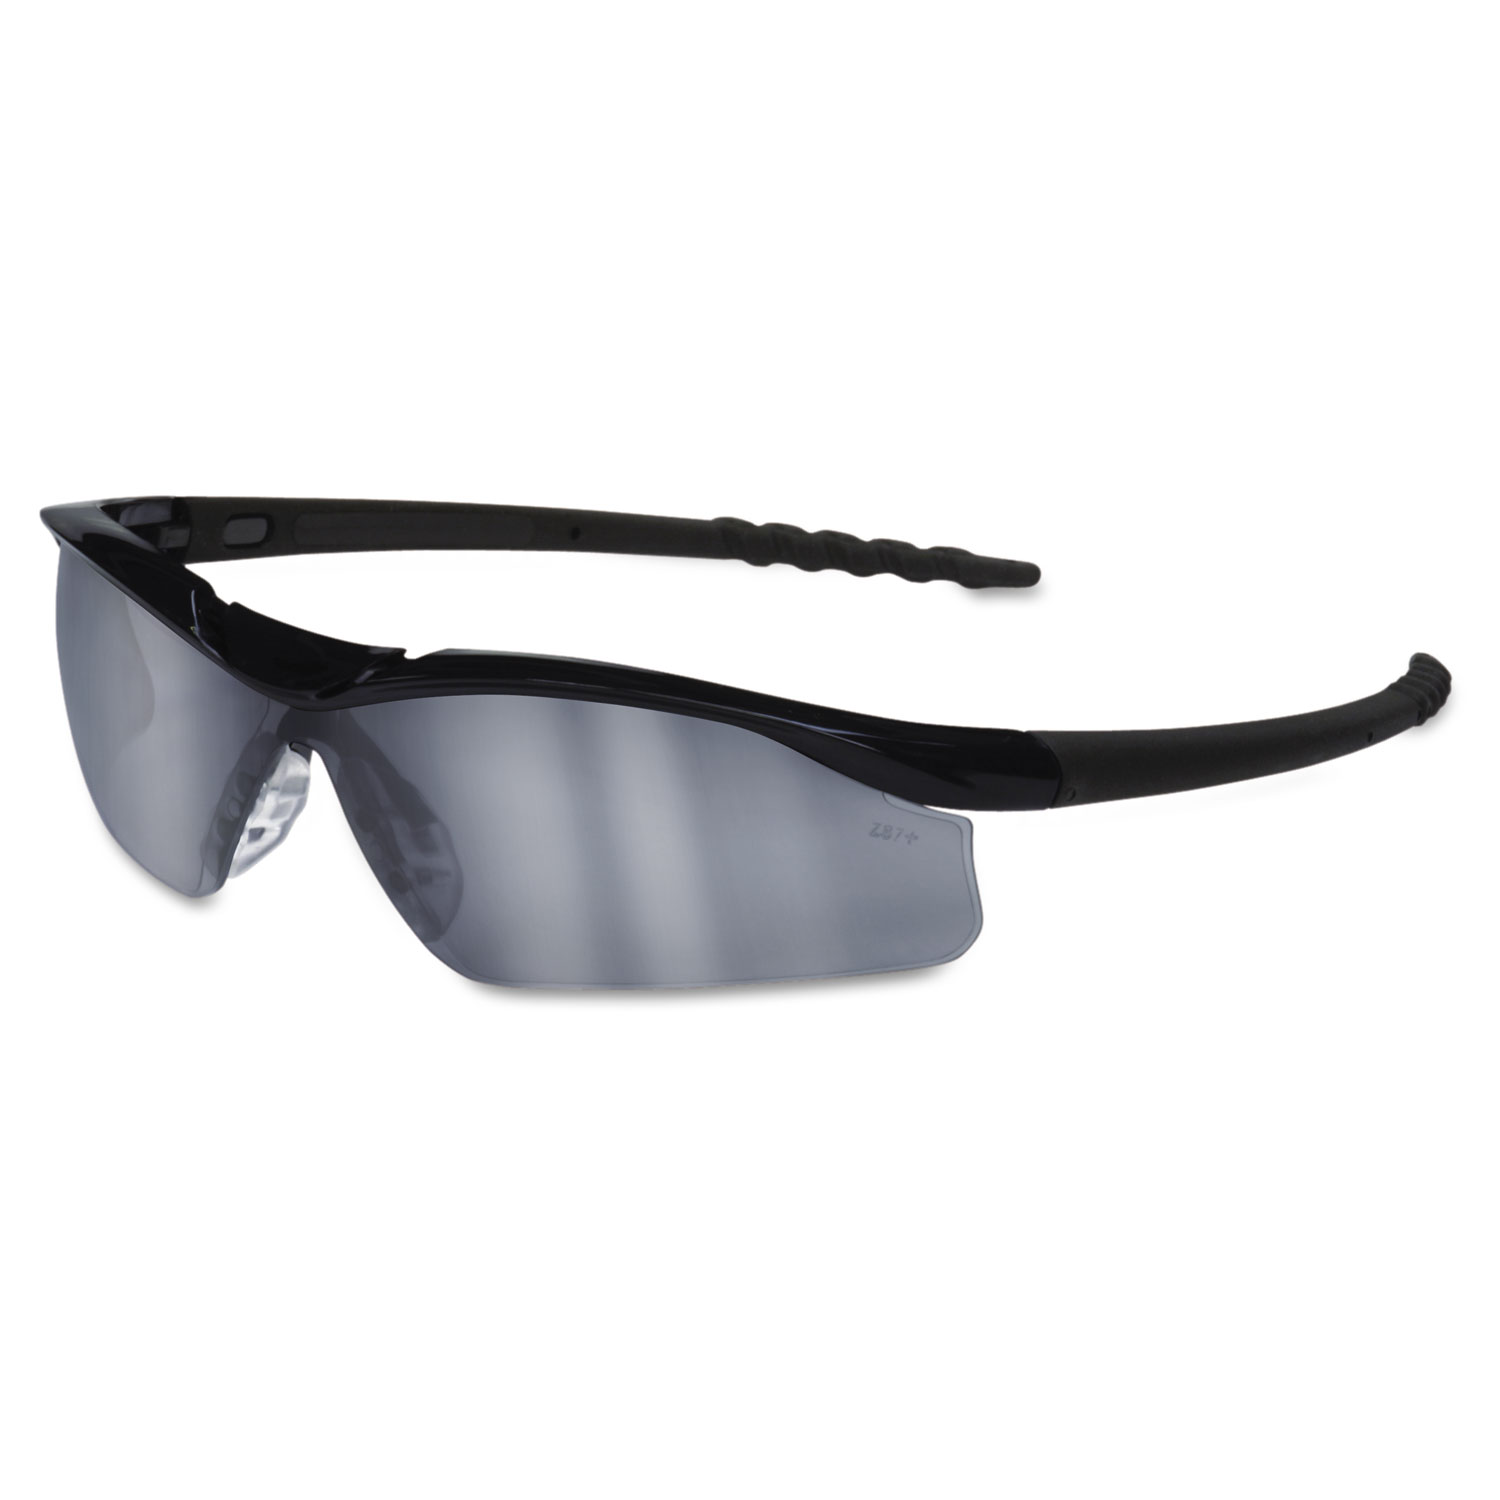  MCR Safety DL119AF Dallas Wraparound Safety Glasses, Black Frame, Gray Indoor/Outdoor Lens (CRWDL119AF) 